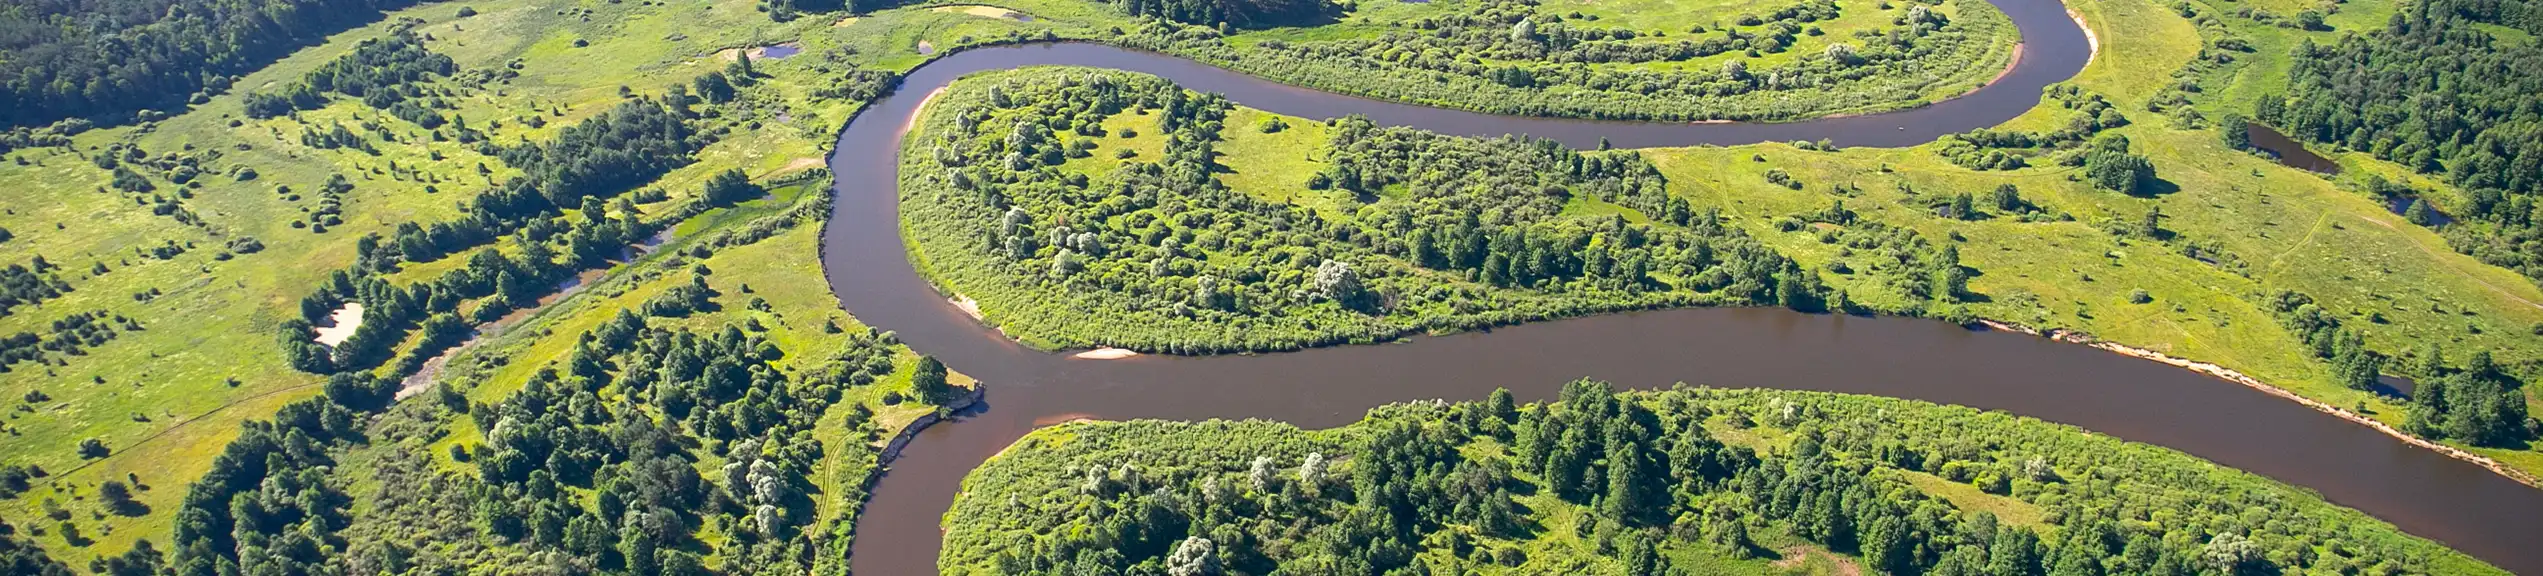 Река Неман: расцвет и смерть мастерства плотогонов